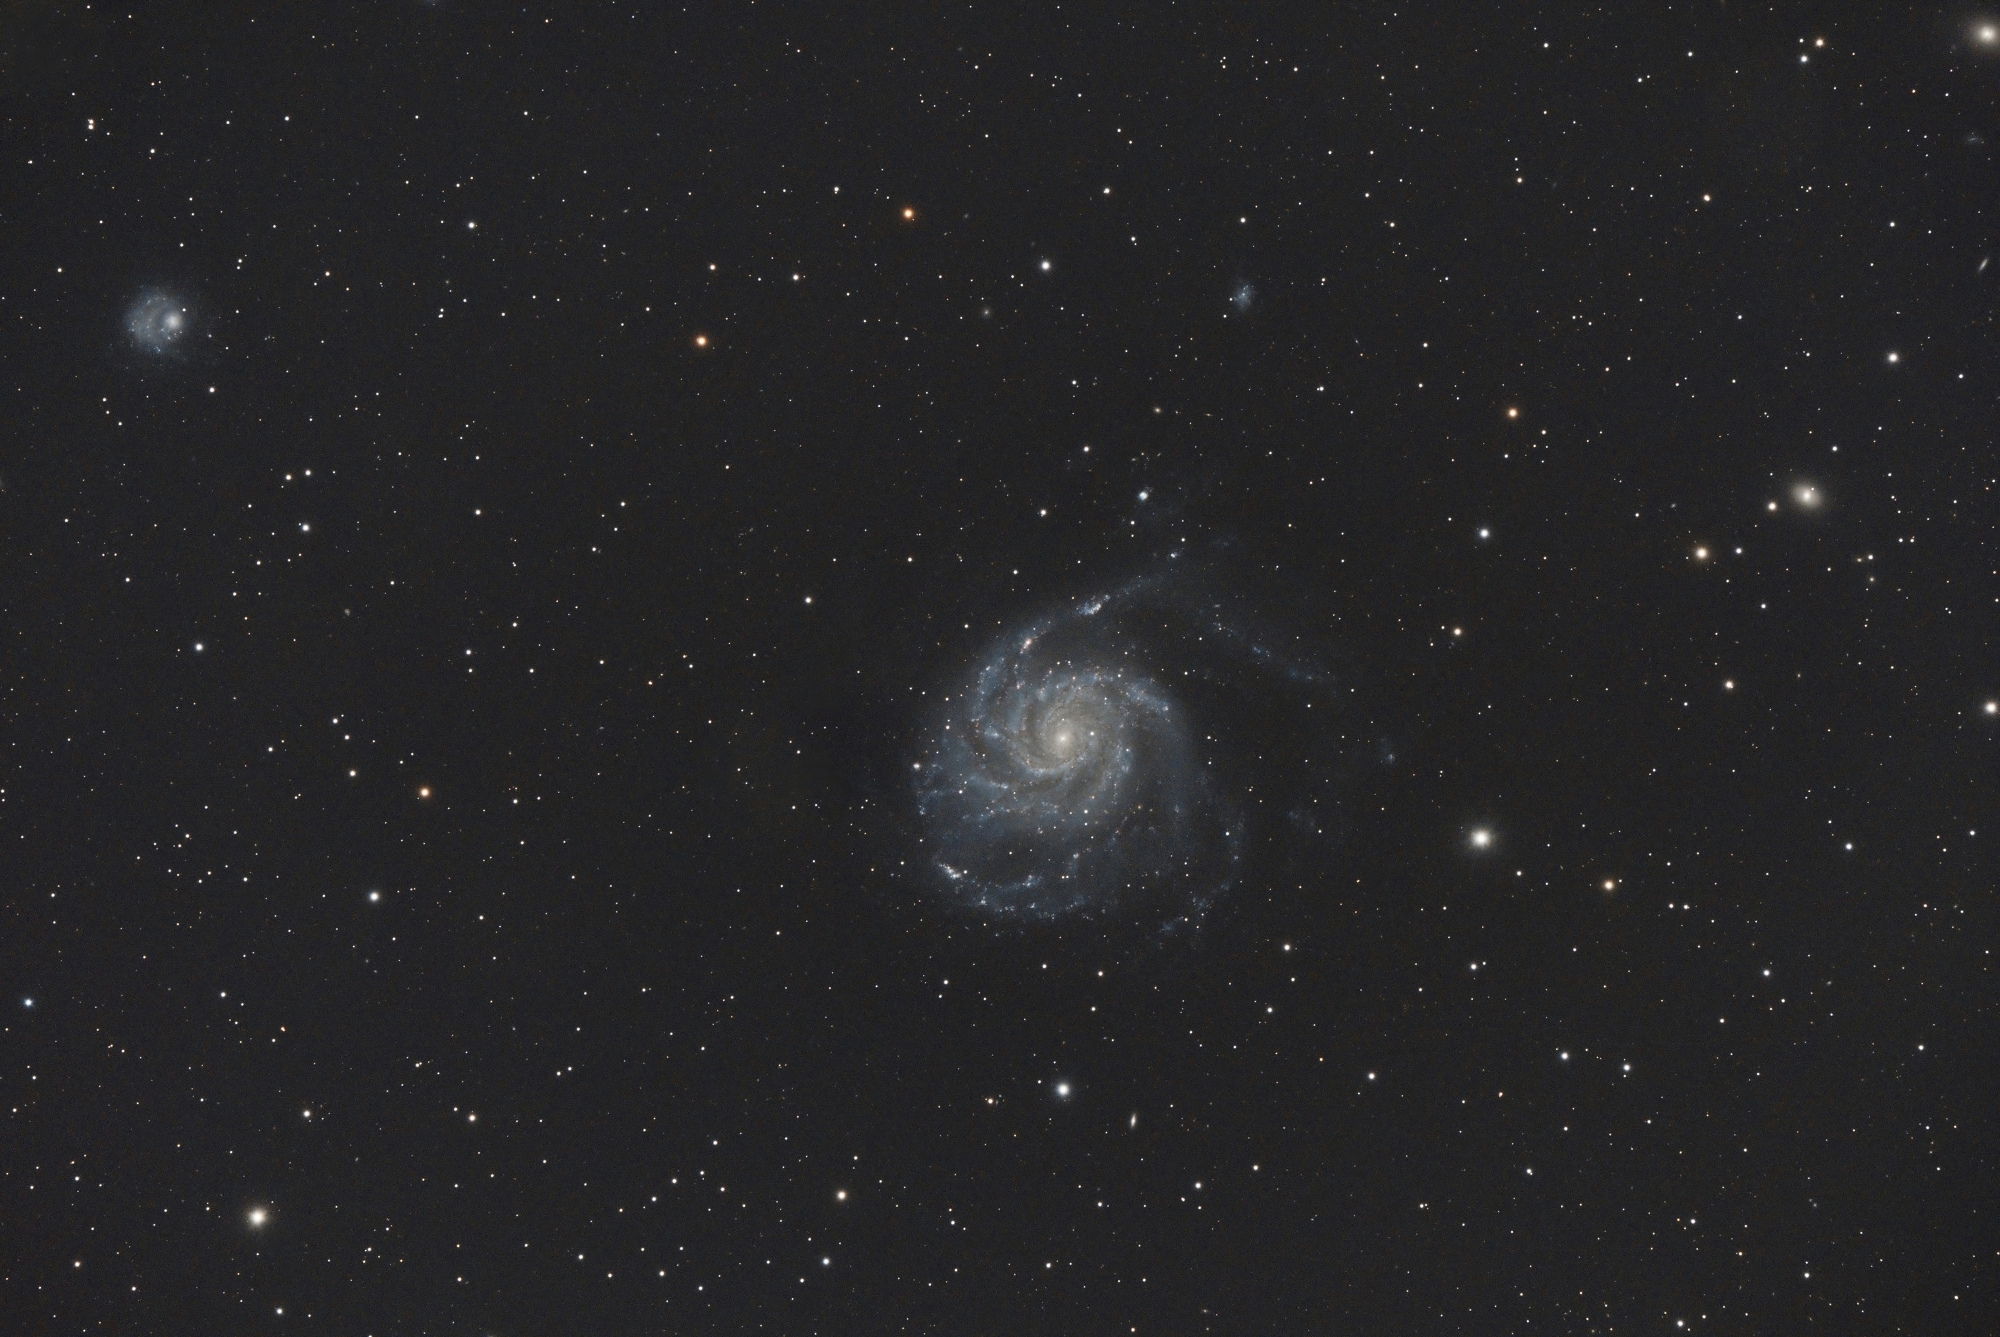 M101_SIRIL-1-cs5-2-FINAL-4.jpg